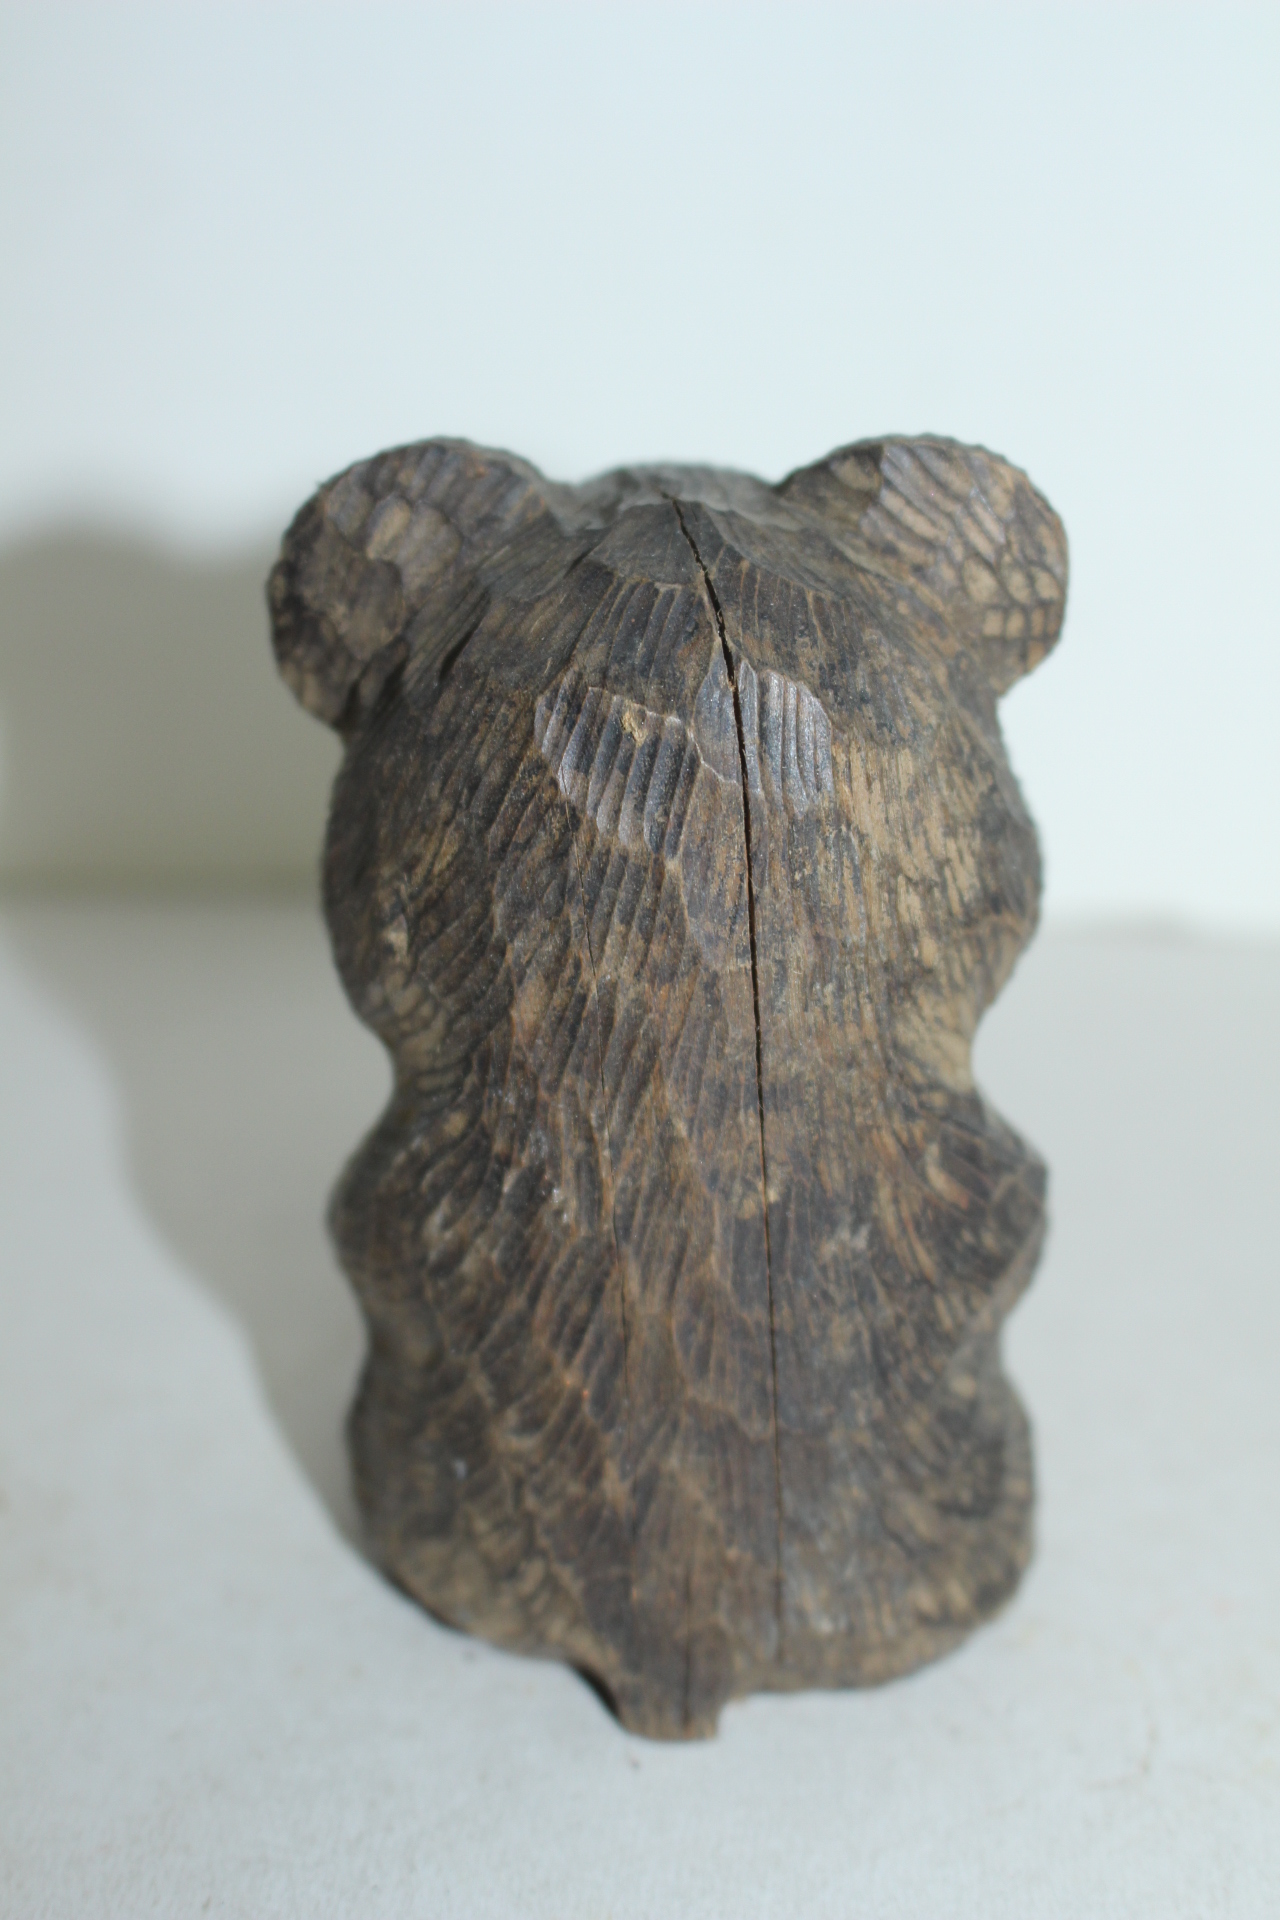 나무를 통으로 조각한 곰 조각상